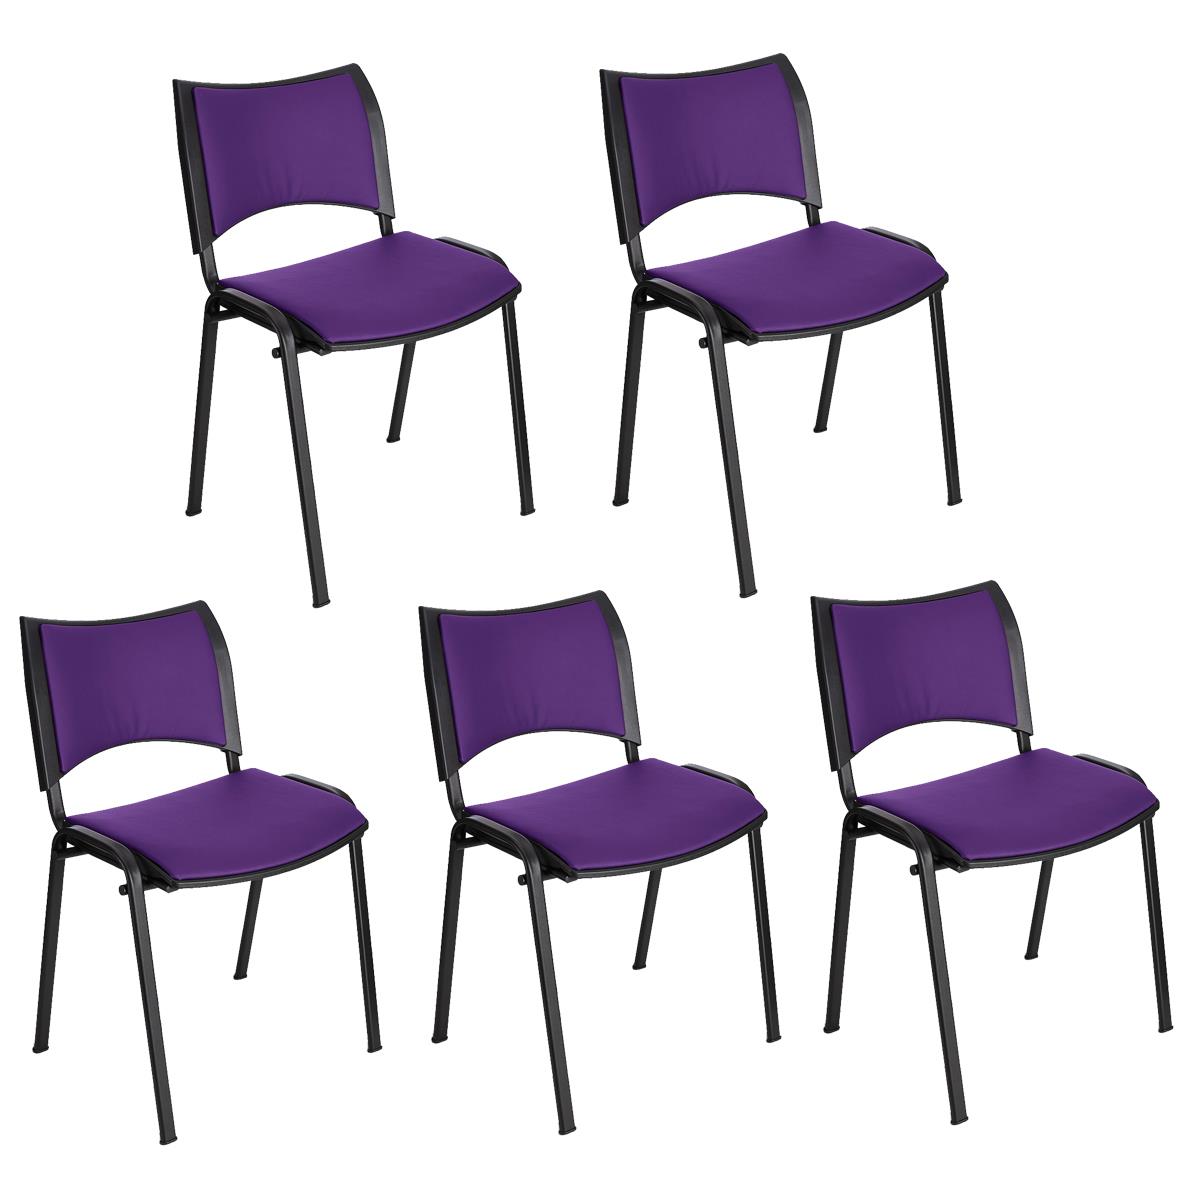 Lote 5 Cadeiras de Visita ROMEL PELE, Prática e Empilhável, Pernas Pretas, Roxo